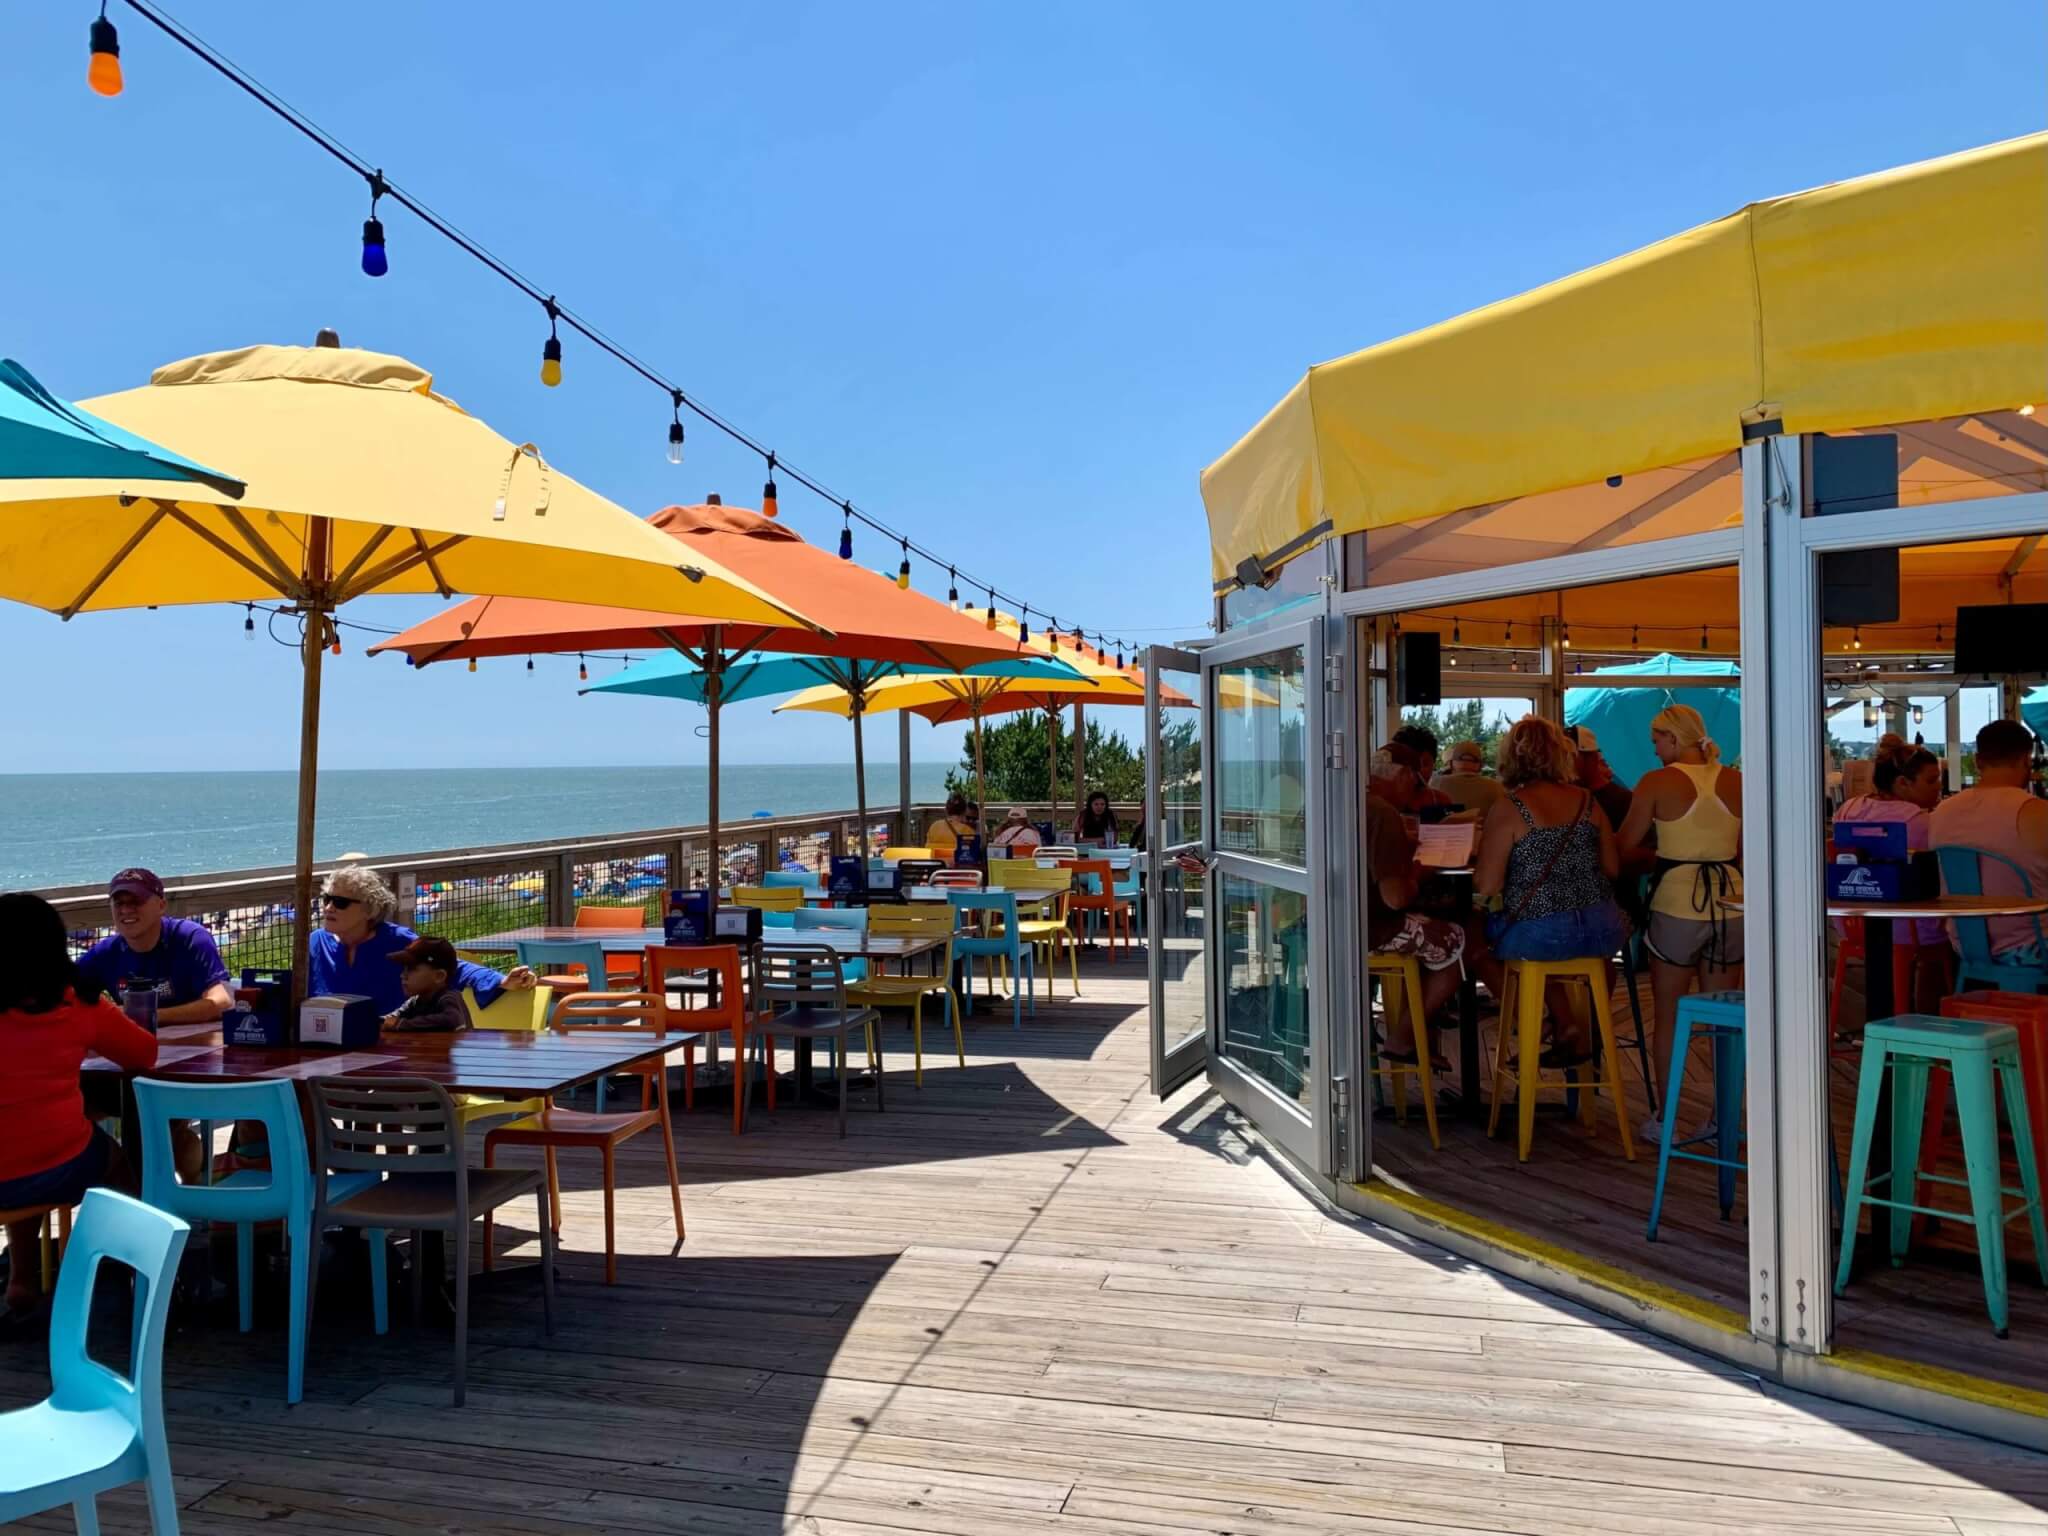 25 of the Best Restaurants in Rehoboth Beach, Delaware - Full Life